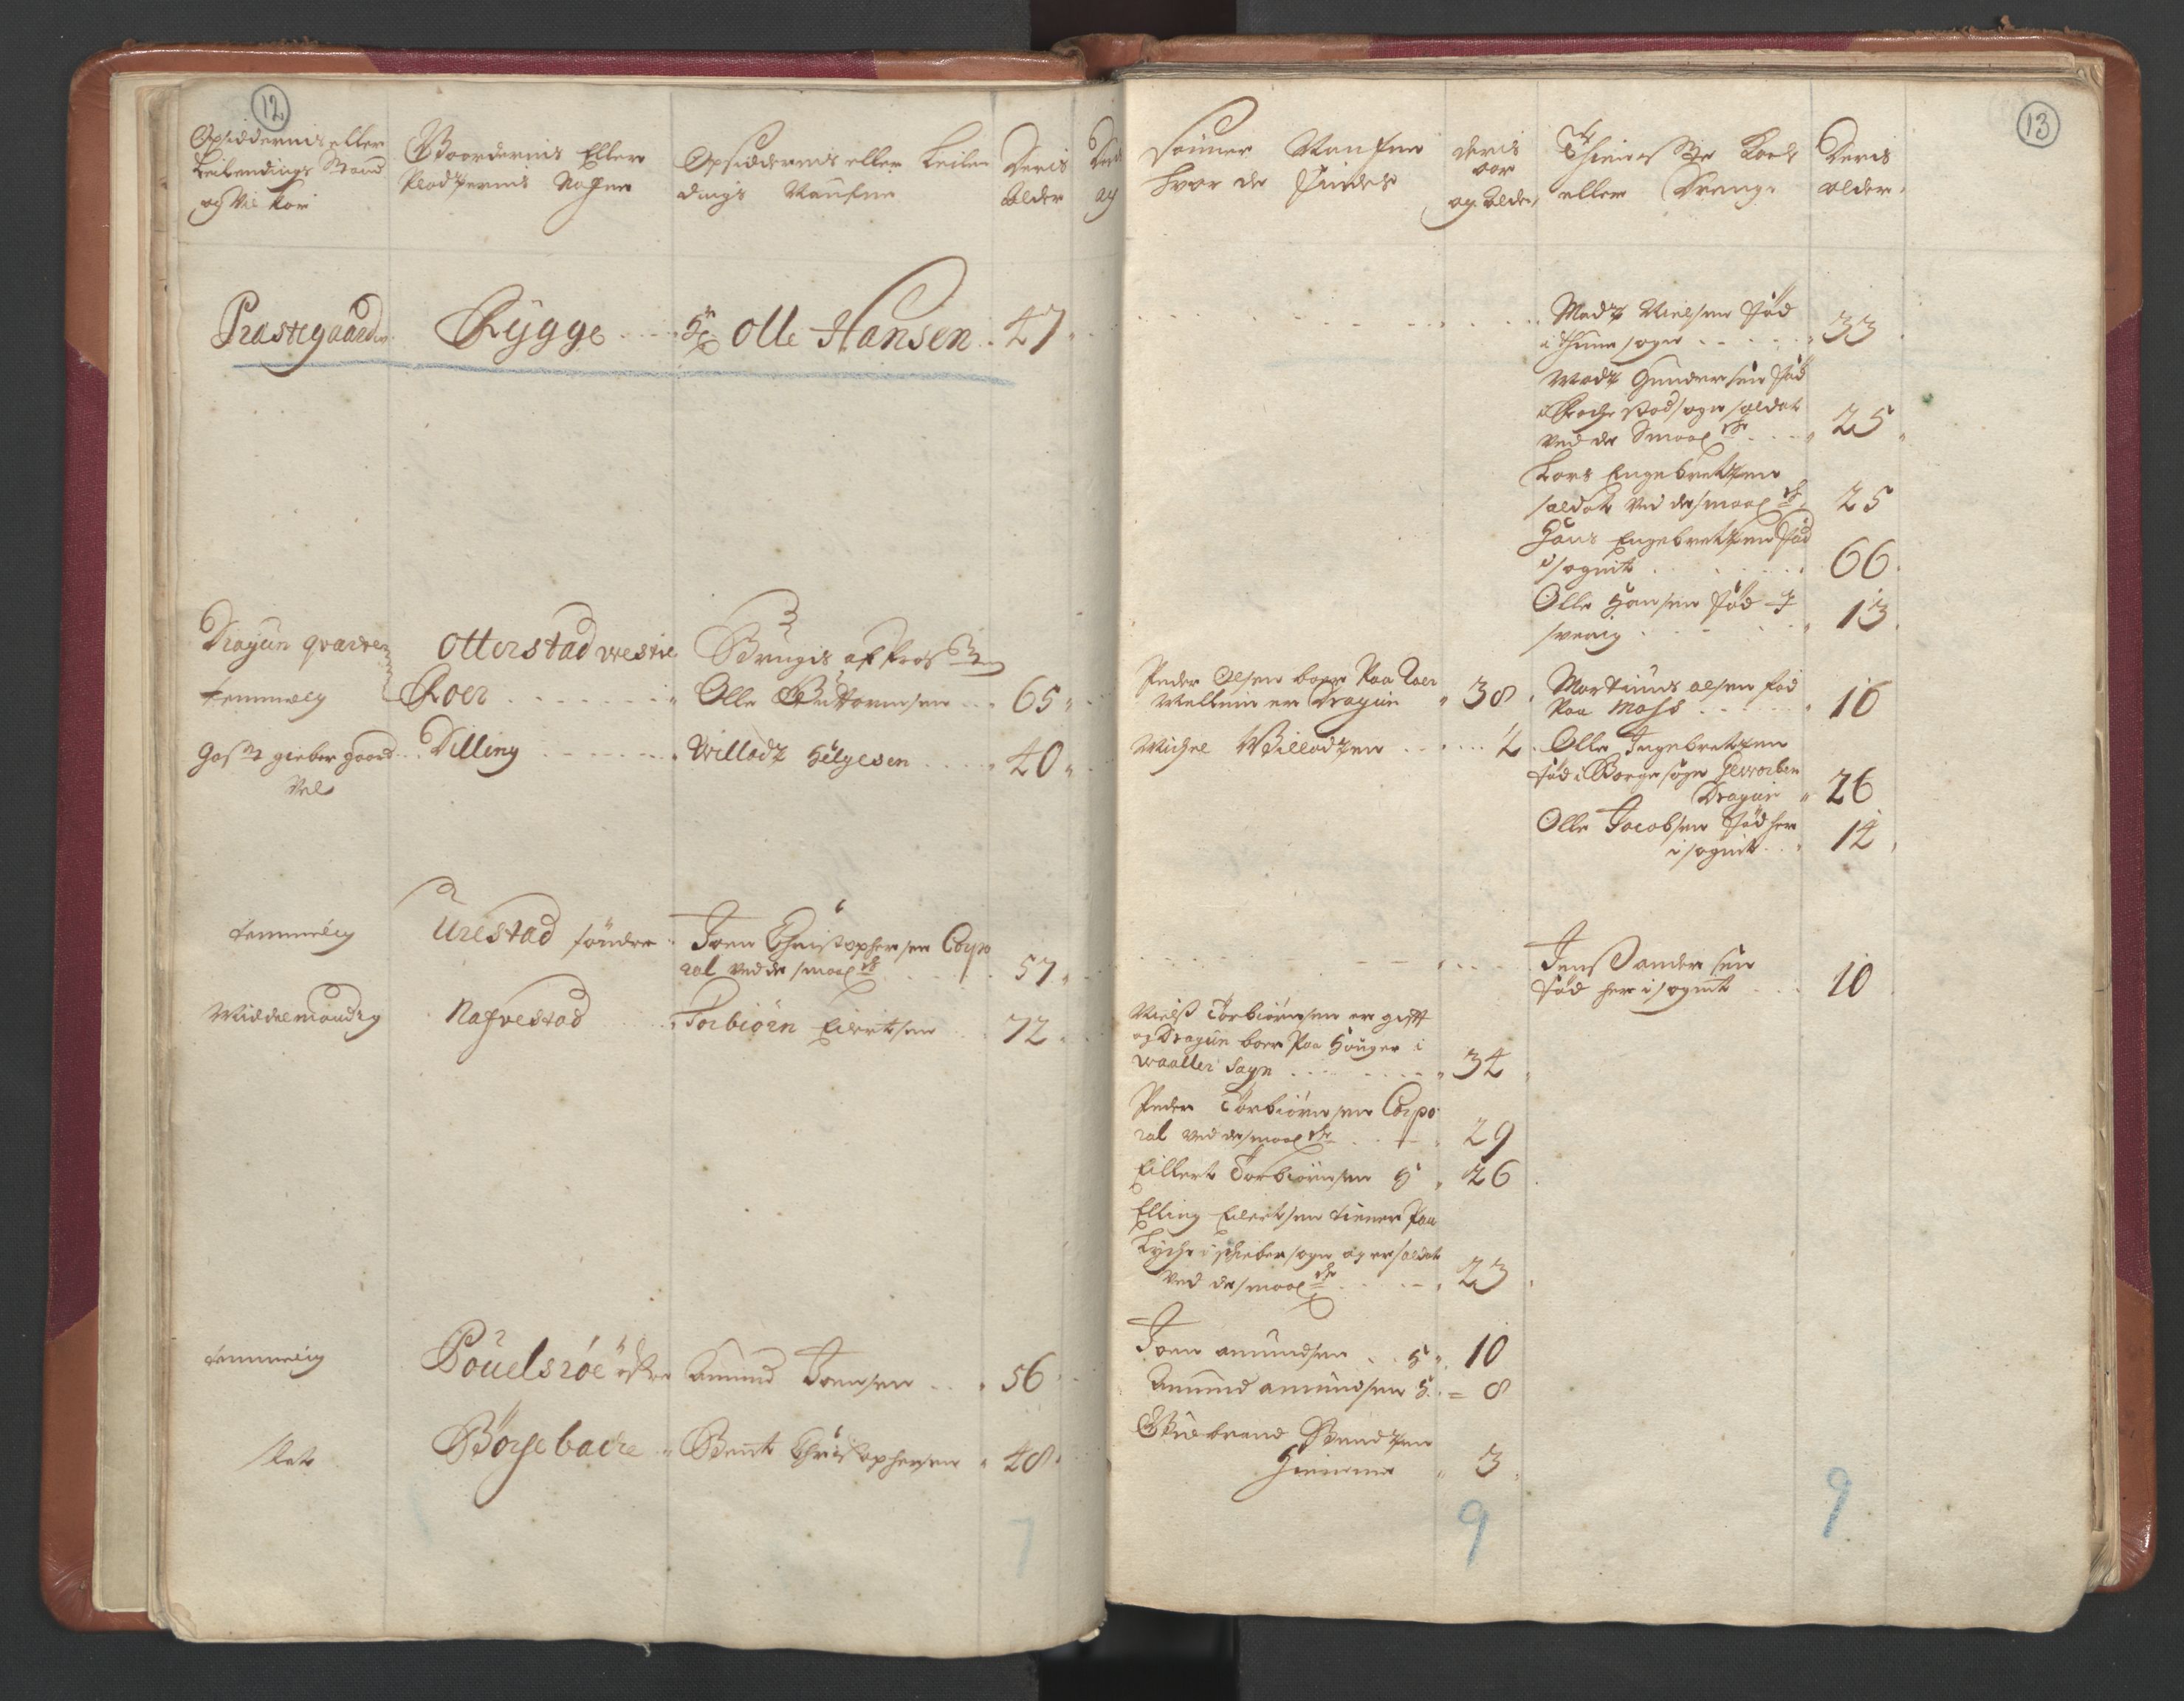 RA, Manntallet 1701, nr. 1: Moss, Onsøy, Tune og Veme fogderi og Nedre Romerike fogderi, 1701, s. 12-13